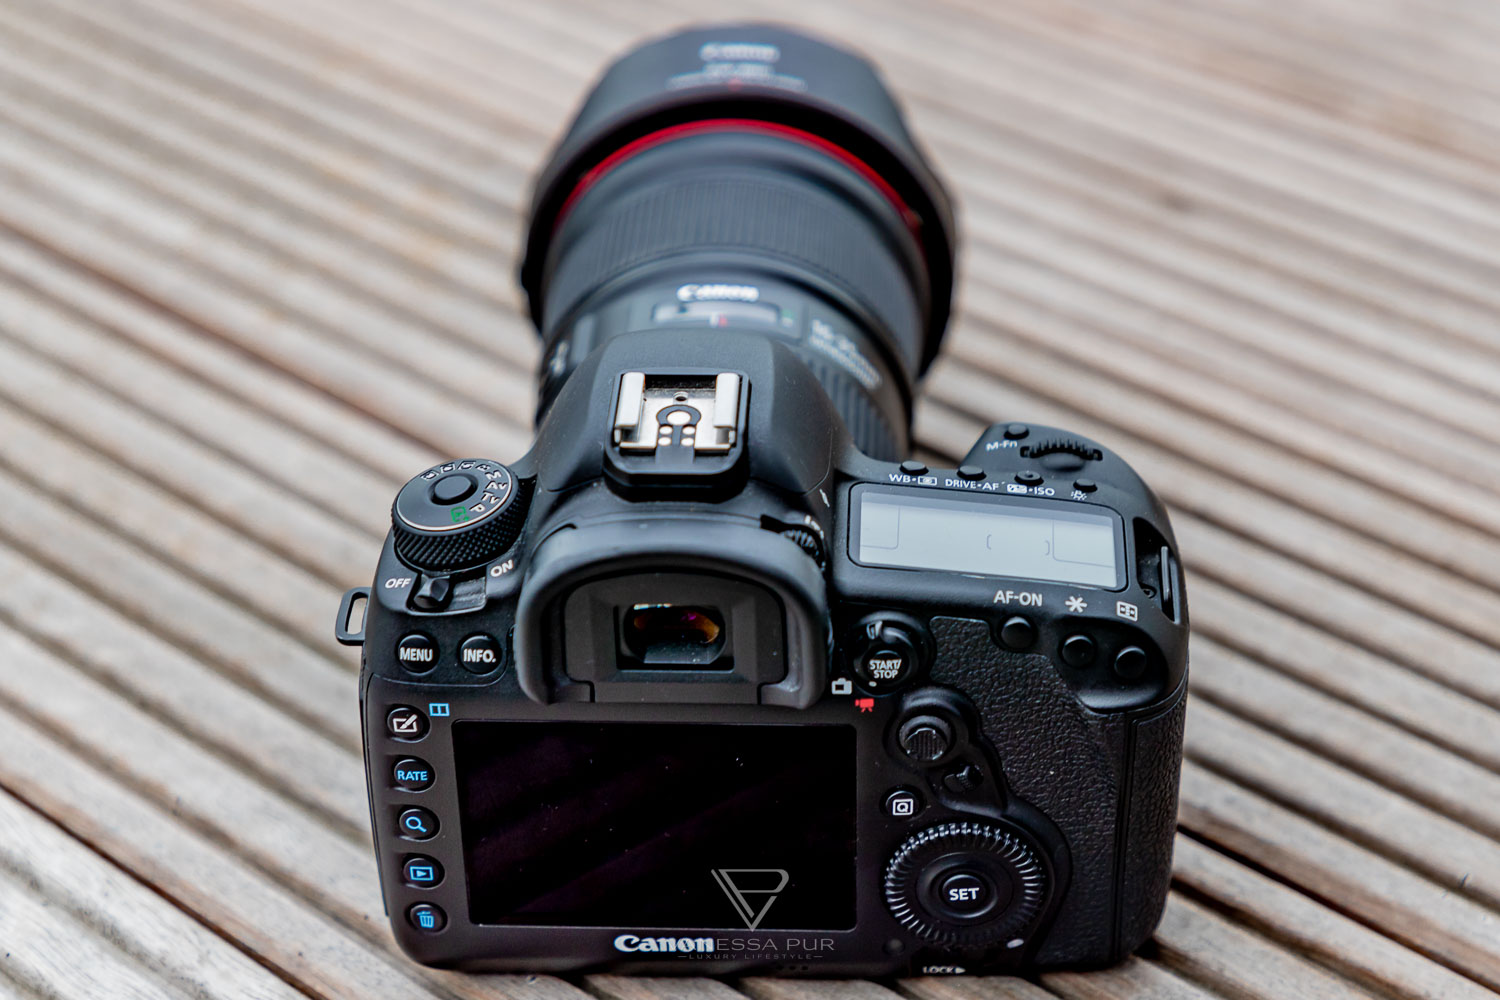 Canon 5D Mark IV - Test, Erfahrung, Langzeit-Test - 1 Jahr unterwegs - Bewertung - Canon 5D Mark IV im Langzeittest - Wie gut ist die Canon 5d Mark IV für YouTuber und Vlogger? Ist es die perfekte Kamera? Welche Kamera für Einsteiger und Profis?